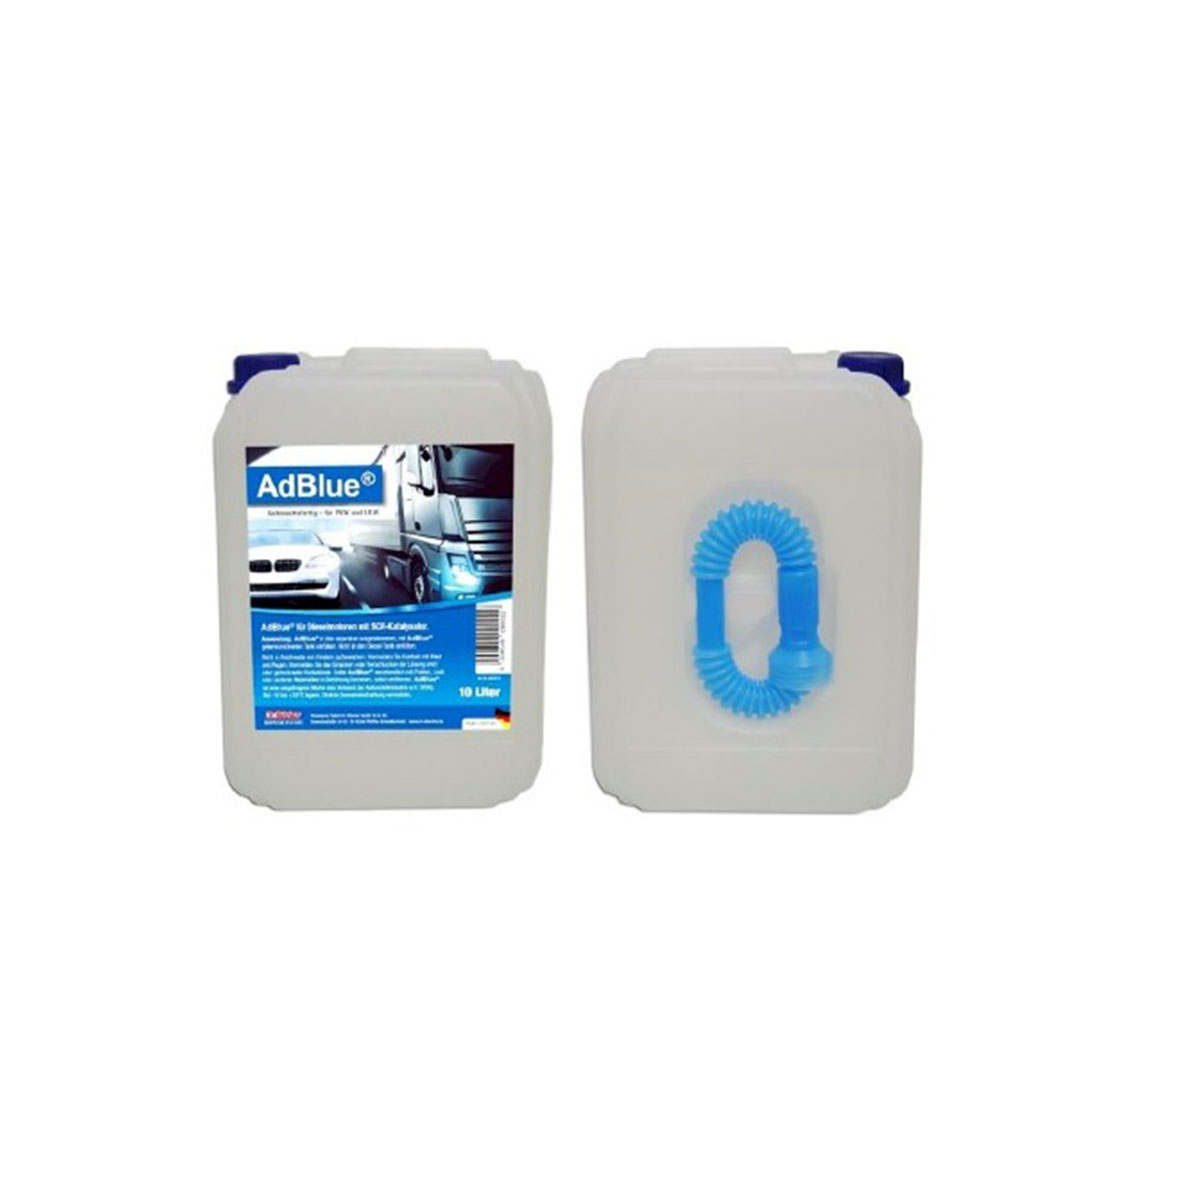 Electronicx AdBlue 1000 Liter für Diesel Kanister Harnstofflösung